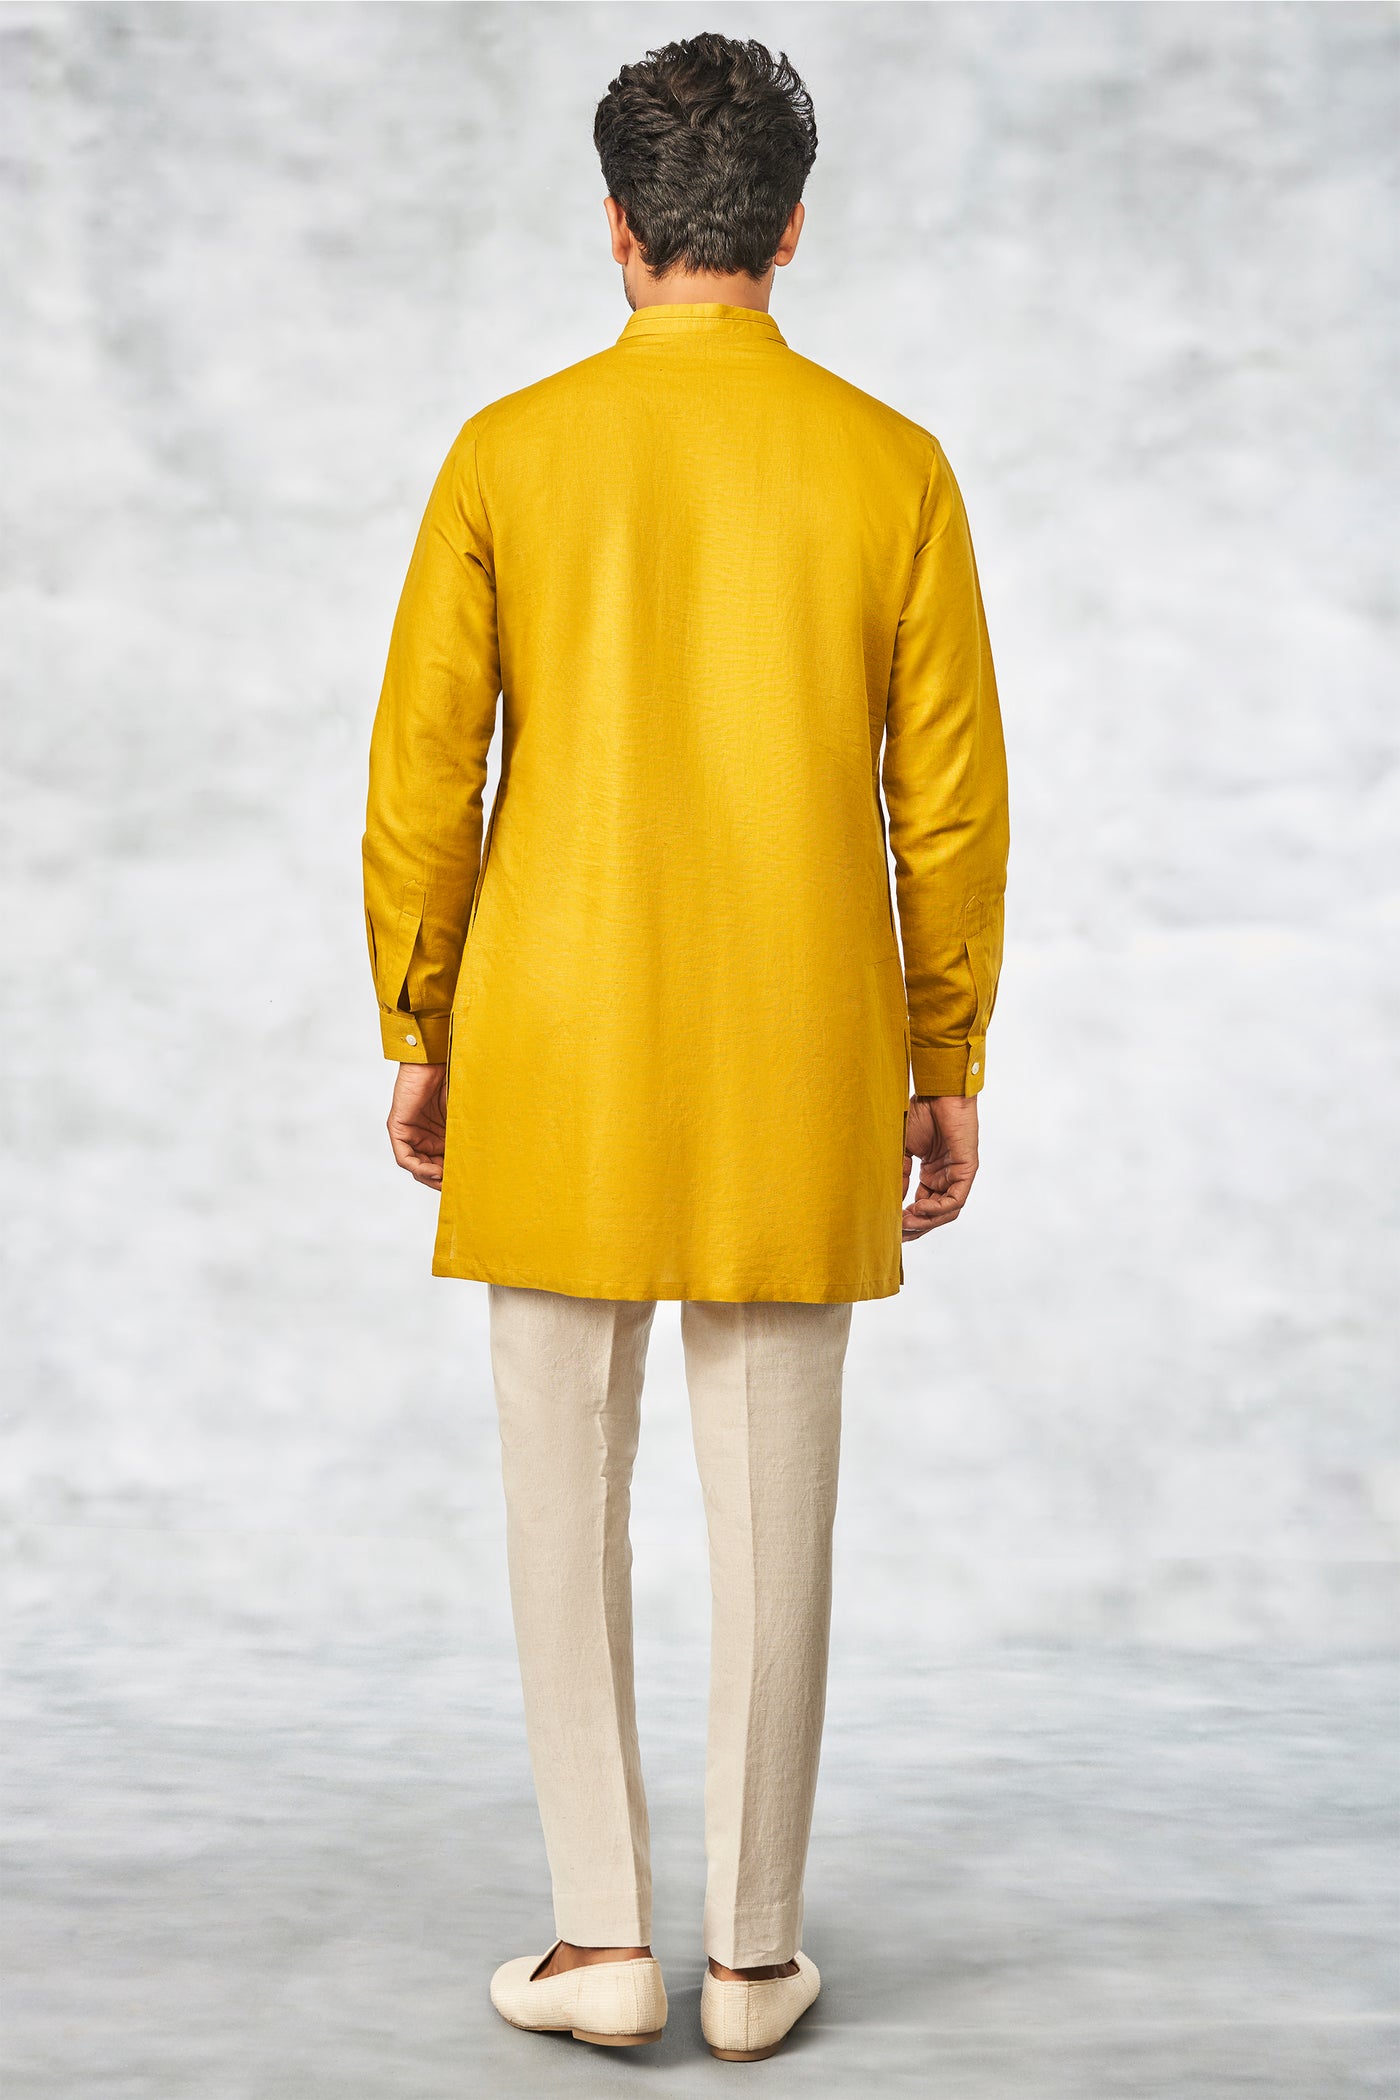 Anita Dongre menswear aveer kurta mustard yellow indian designer wear wedding festive online shopping melange singapore